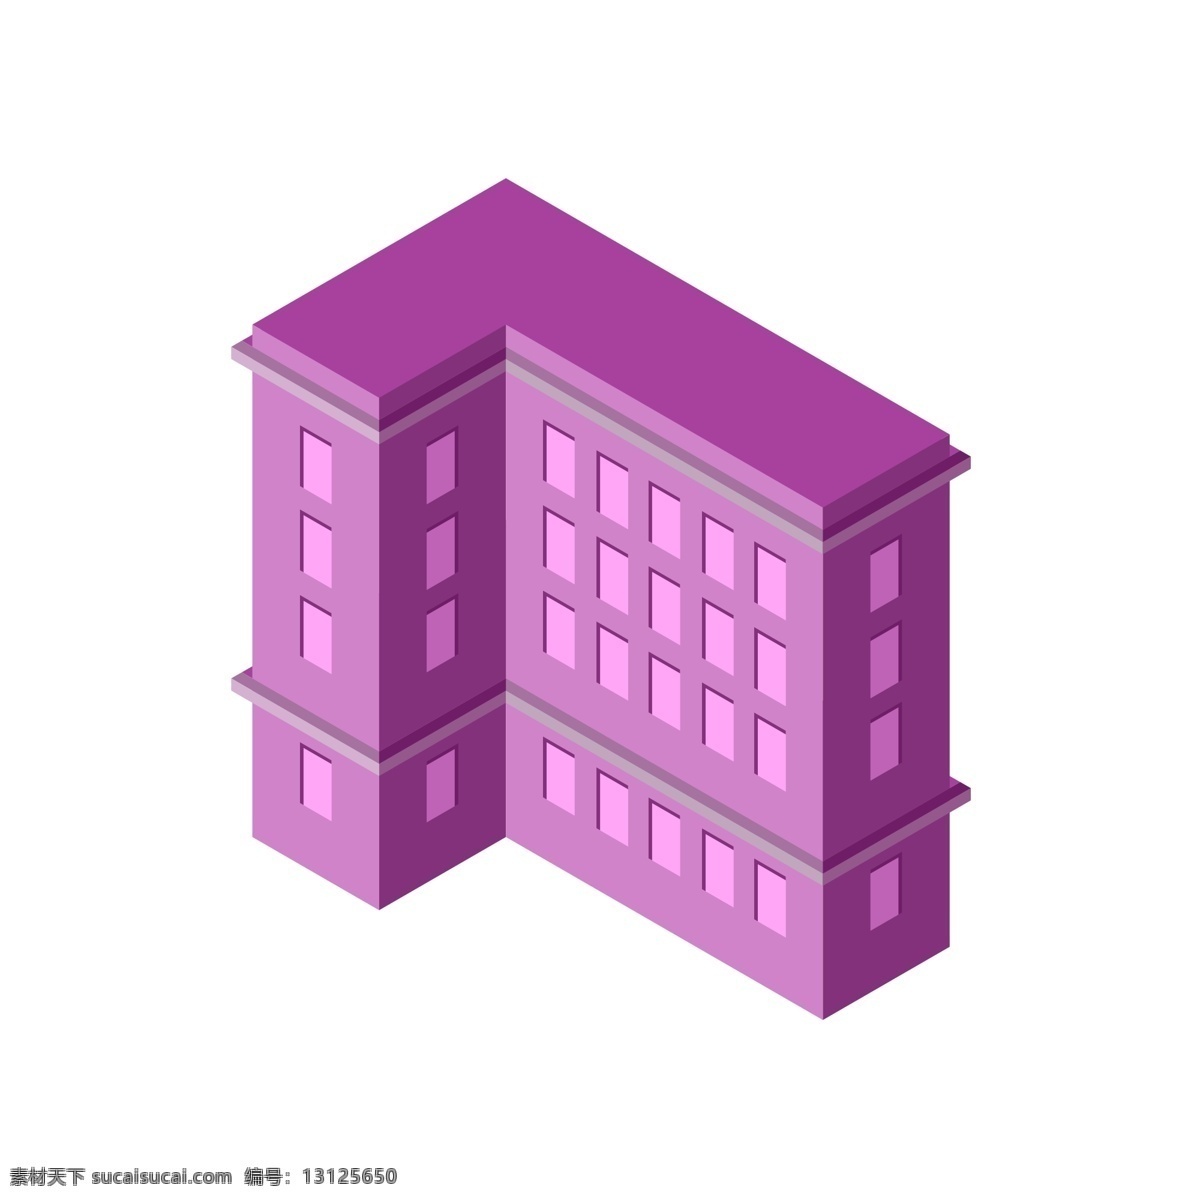 立体 建筑 紫色 楼房 立体建筑 楼房大厦 d 风格 房子